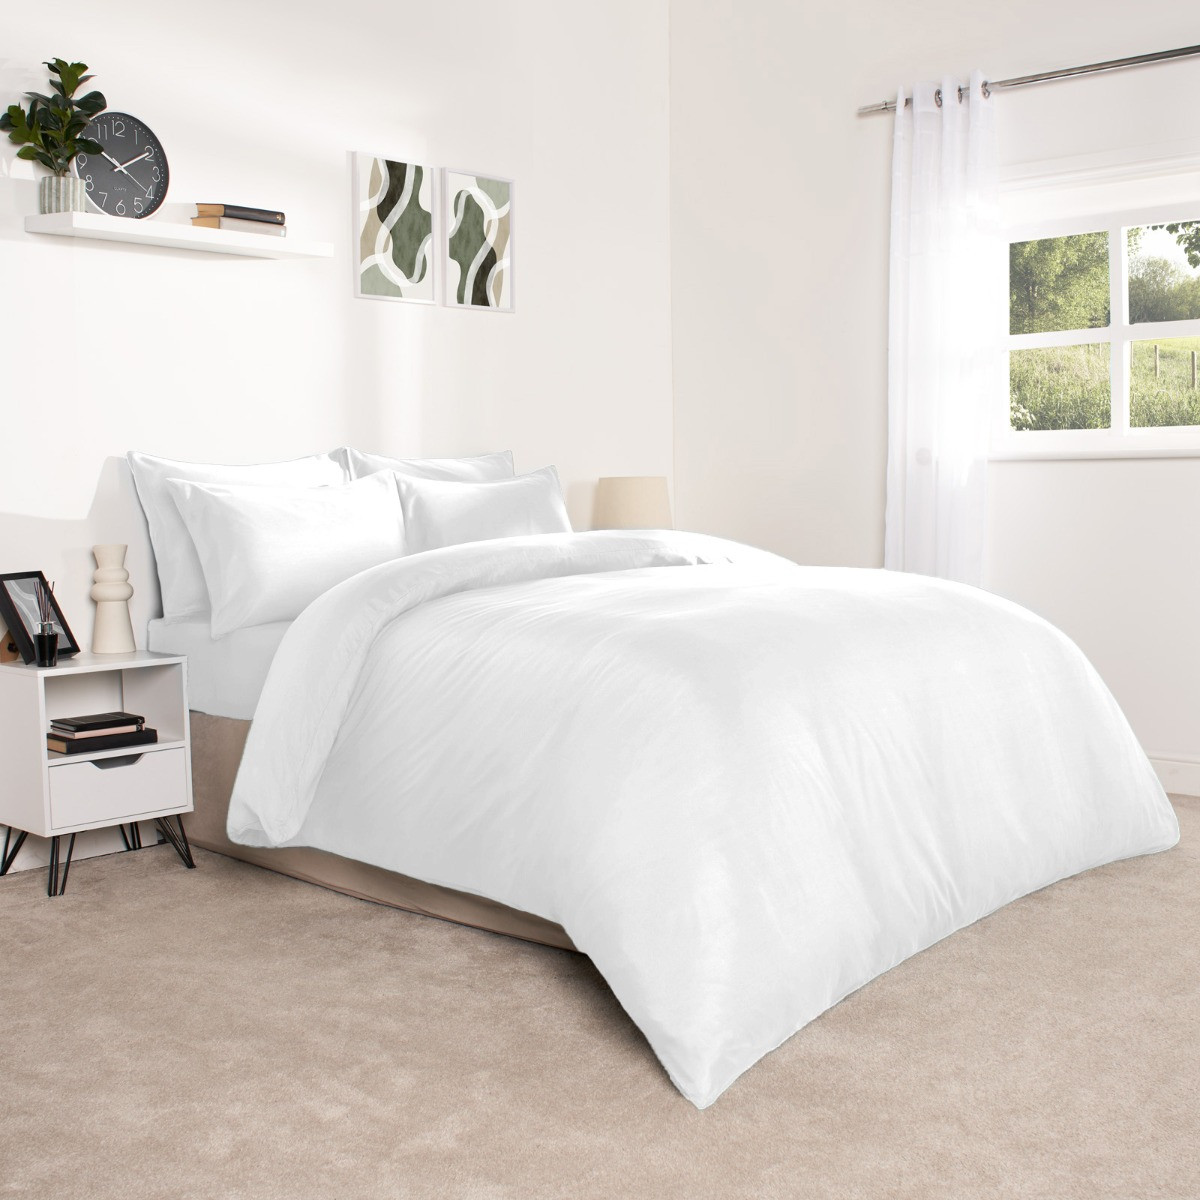 Brentfords Plain Duvet King Size Cover with Pillowcases - White>